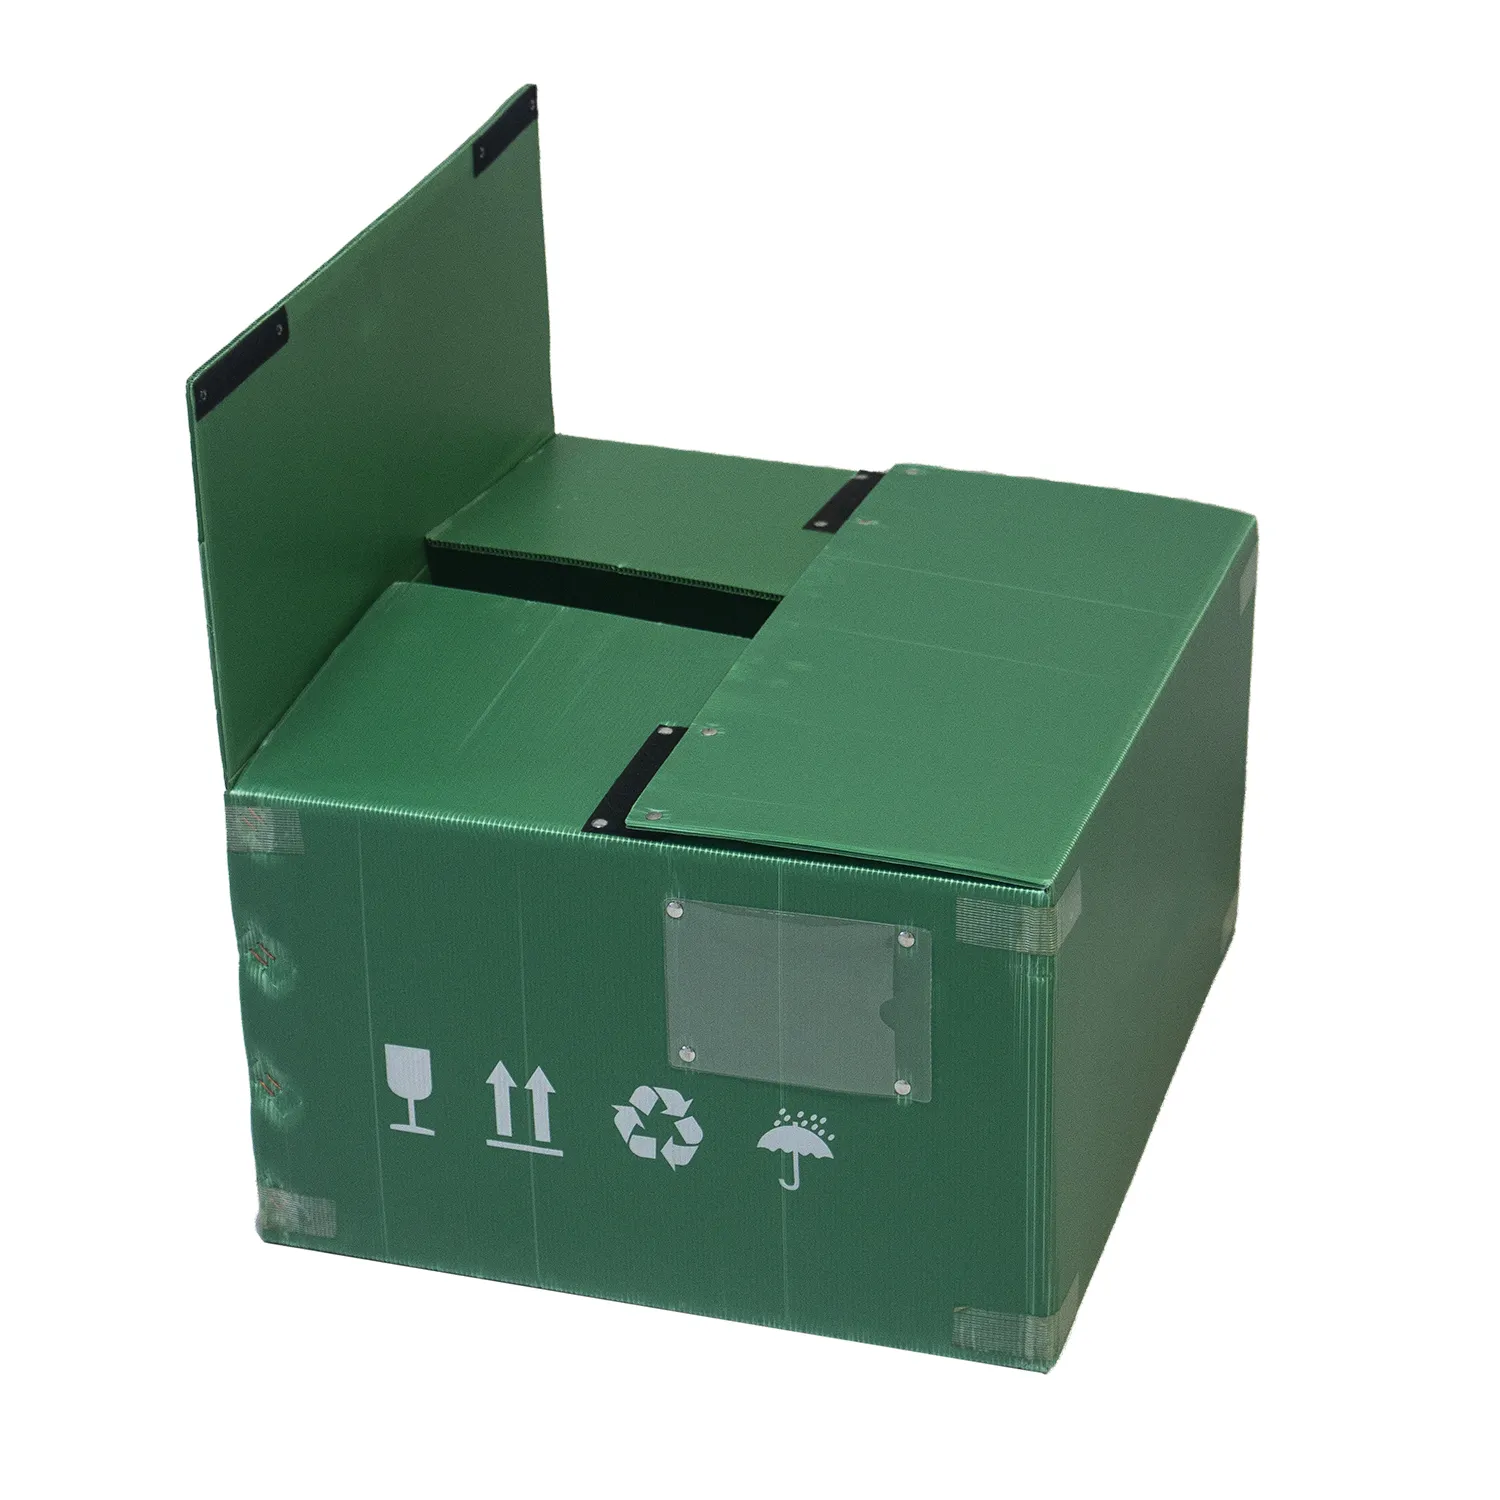 קופסאות פלסטיק גלי לשימוש חוזר מתקפלות עמידות למים באיכות גבוהה לאחסון